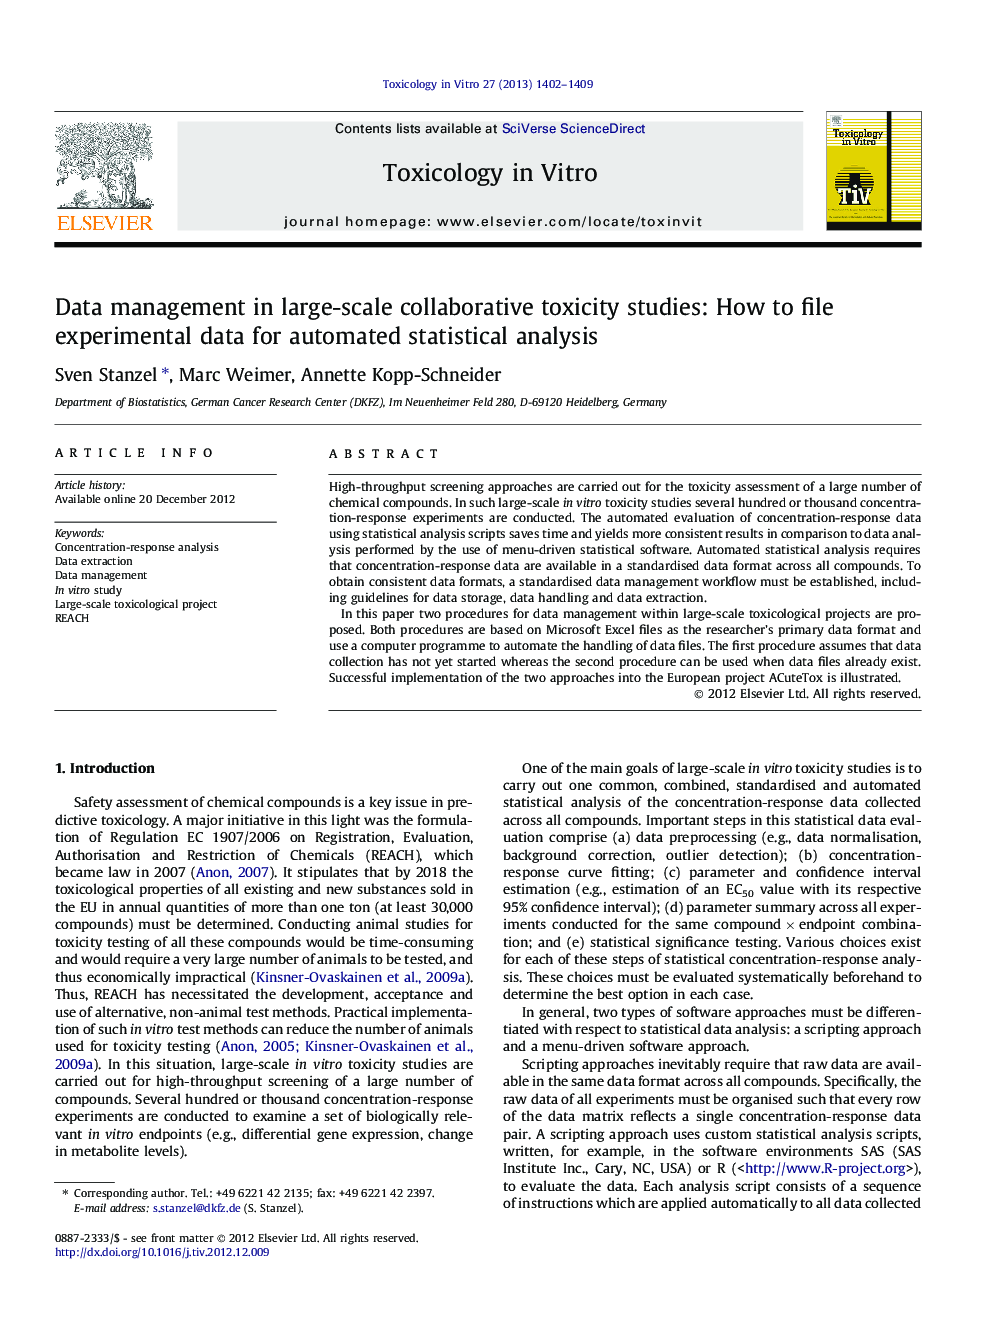 مدیریت داده ها در مقیاس بزرگ مطالعات سمیت مشترک: چگونه داده های تجربی برای تجزیه و تحلیل آماری خودکار 